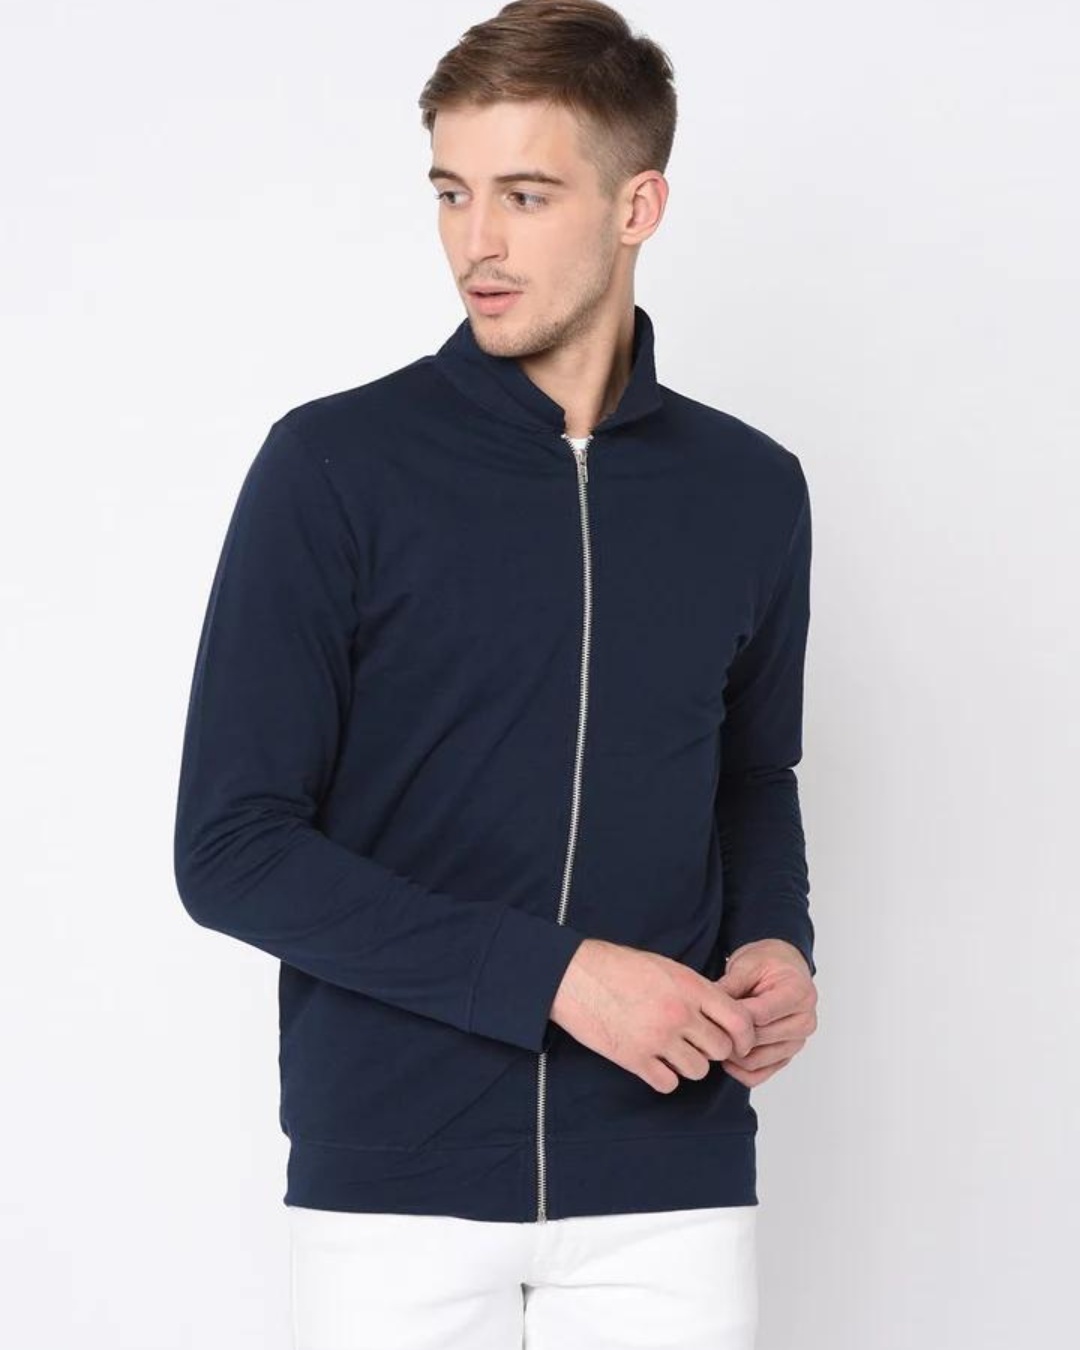 Buy Men's Blue Zipped Jacket Online at Bewakoof